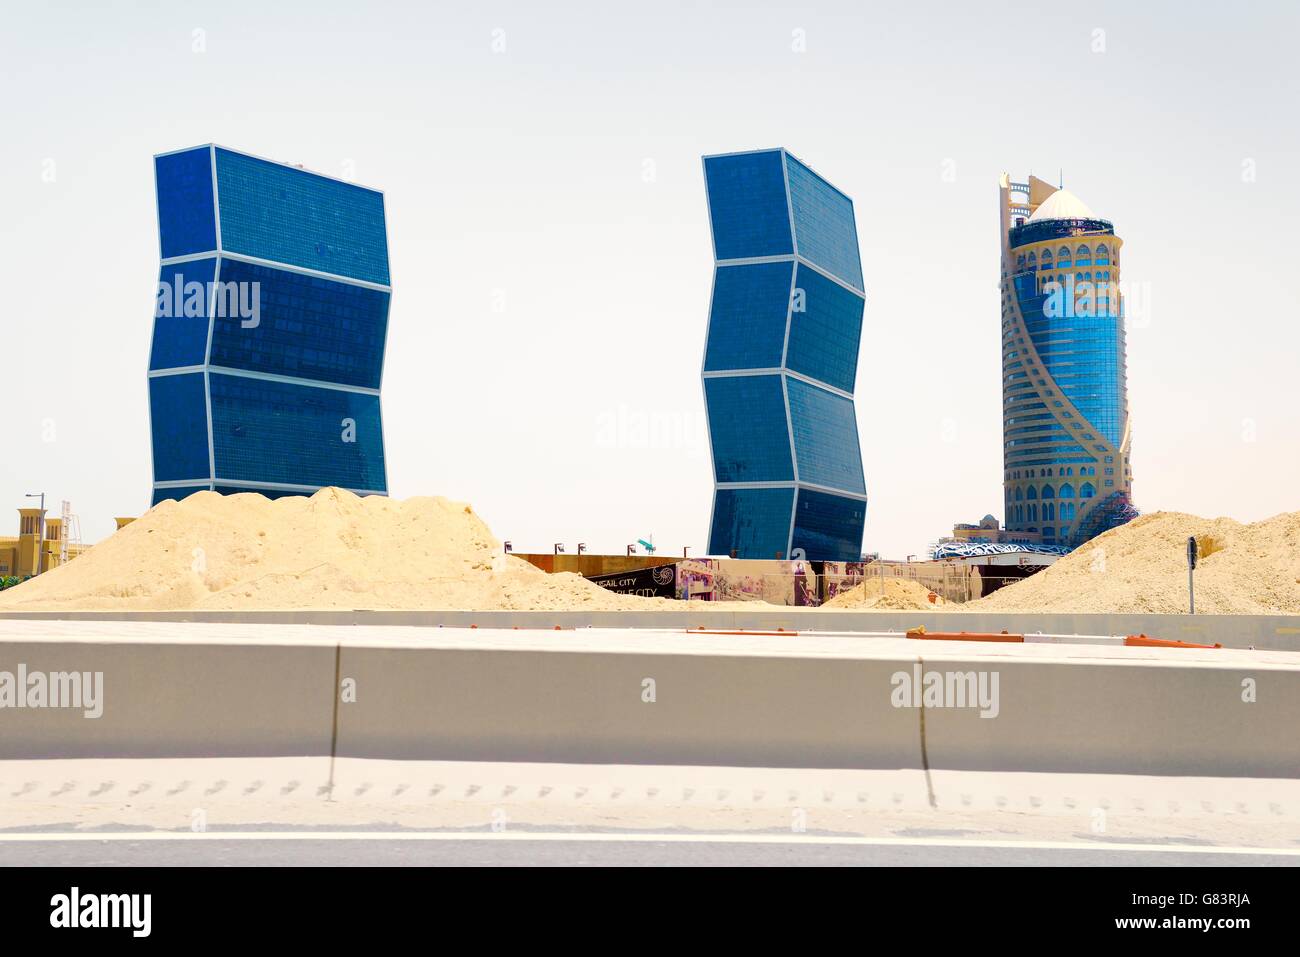 Sich rasch entwickelnden neuen Stadt lusail, Katar. West Bay Lagoon Plaza "zig-zag" wohntürme (l) und der Falcon Turm (r) Stockfoto